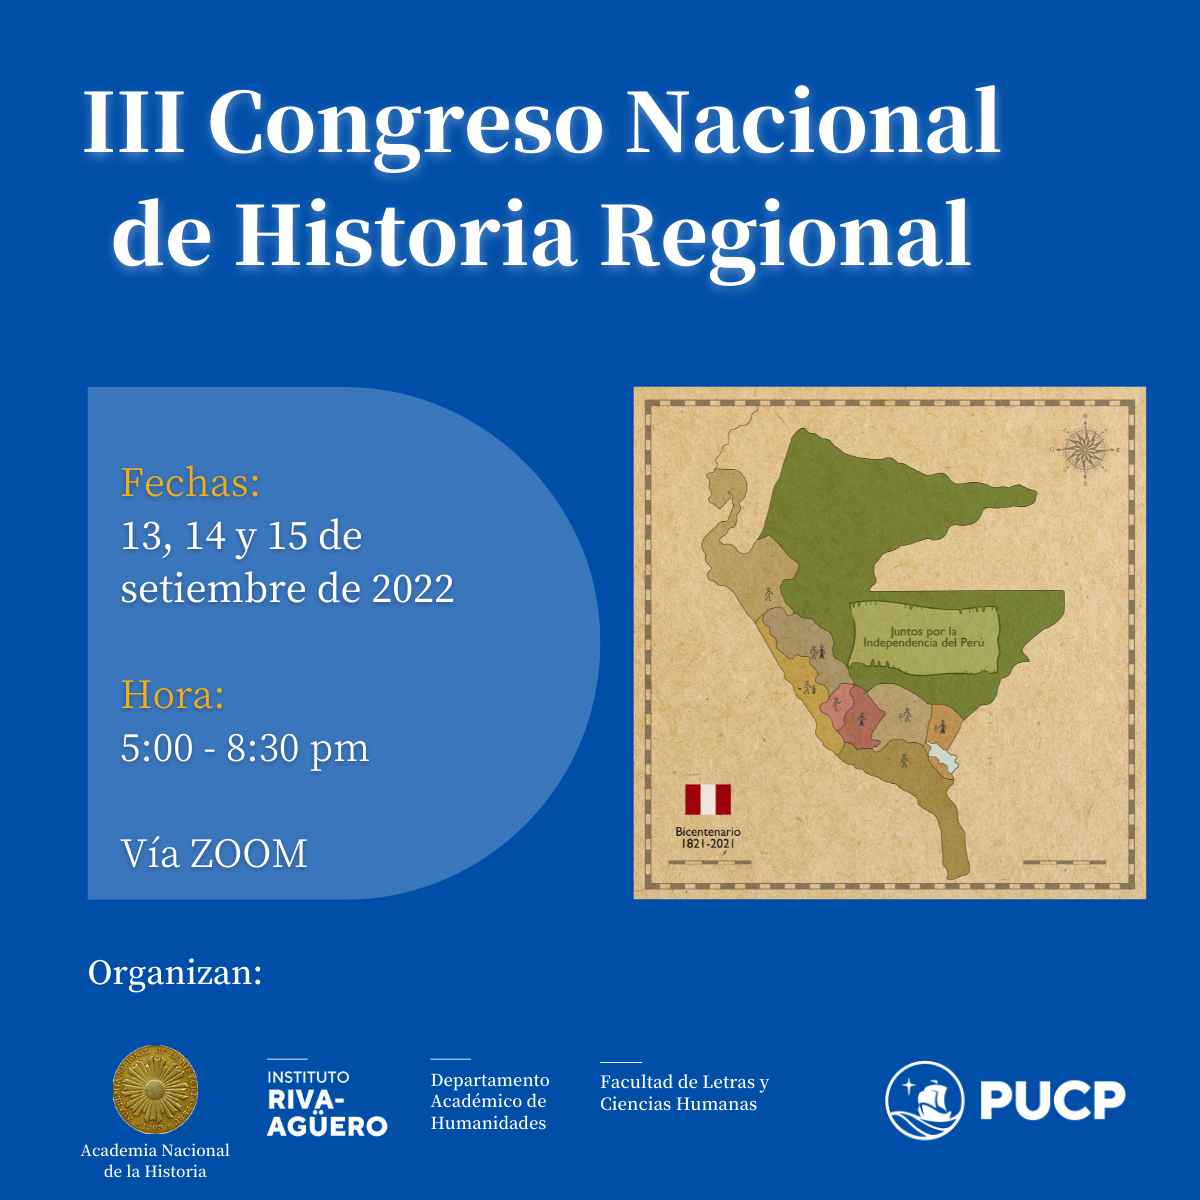 III Congreso Nacional de Historia Regional